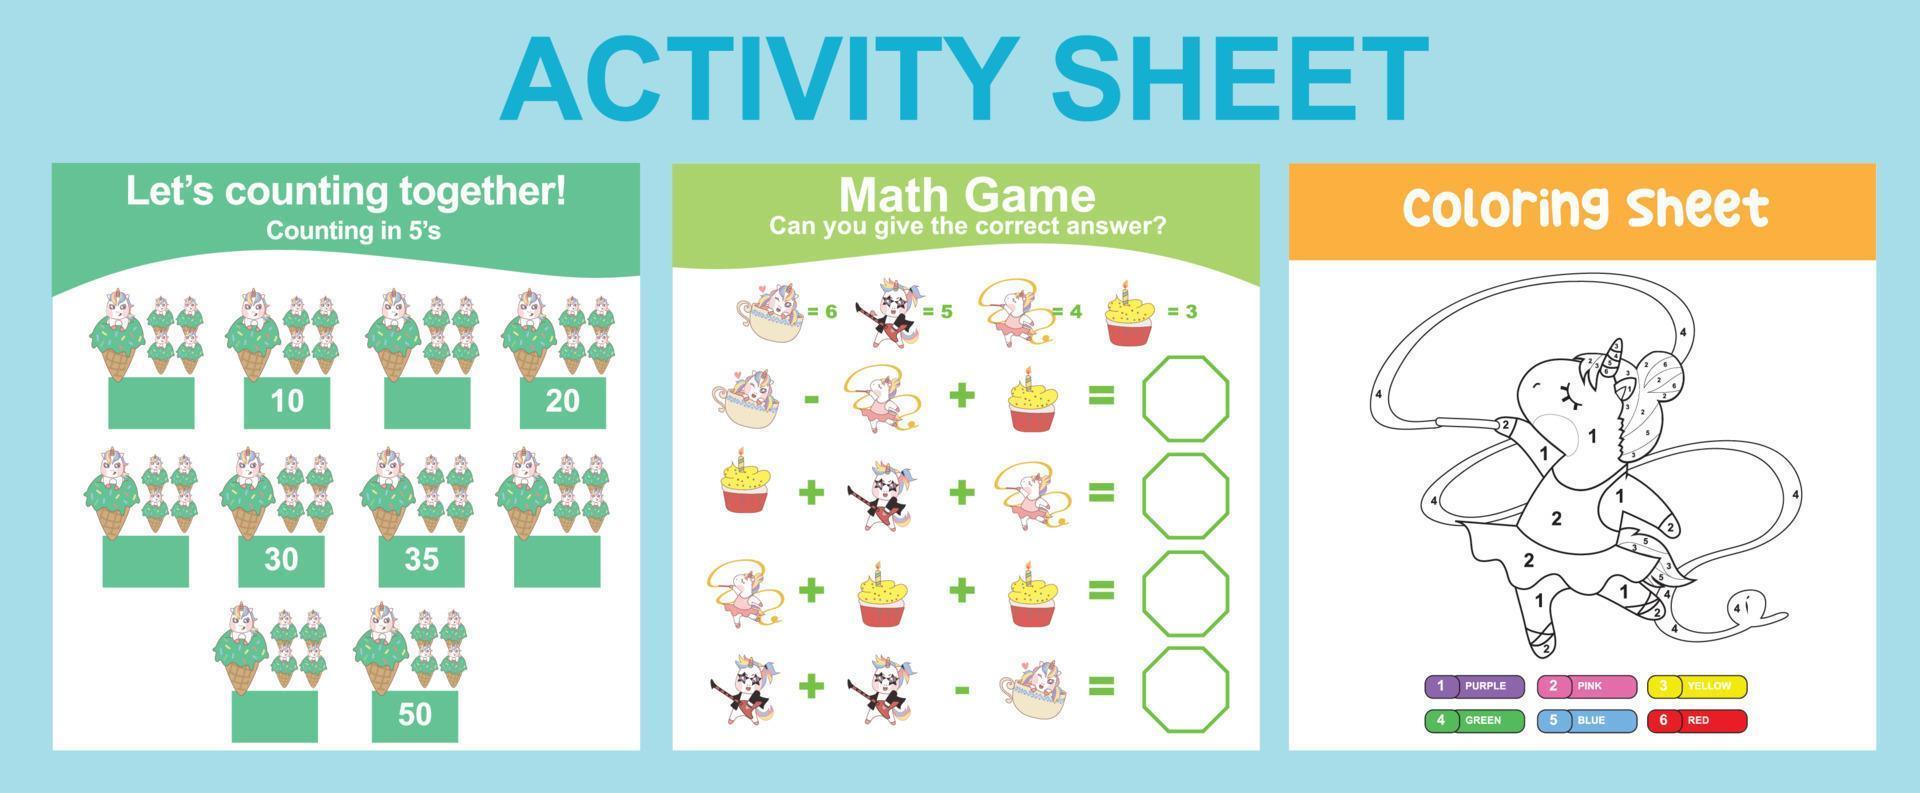 Hoja de actividades 3 en 1 para niños. hoja de trabajo imprimible educativa para preescolar. Actividad para colorear y contar. ilustraciones vectoriales. vector